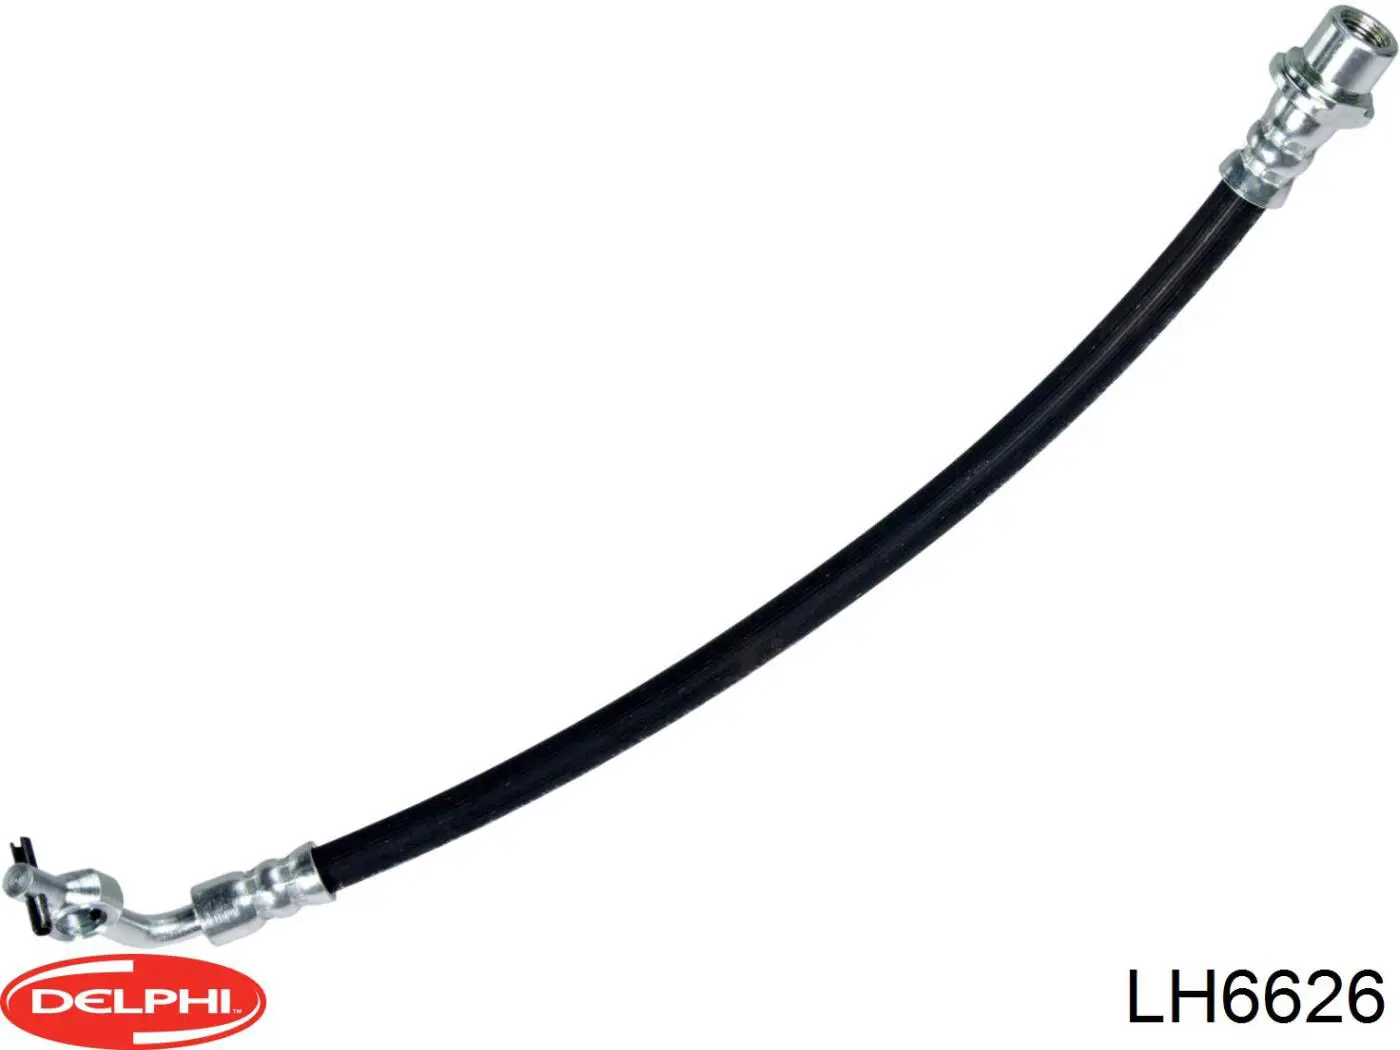 LH6626 Delphi latiguillo de freno delantero